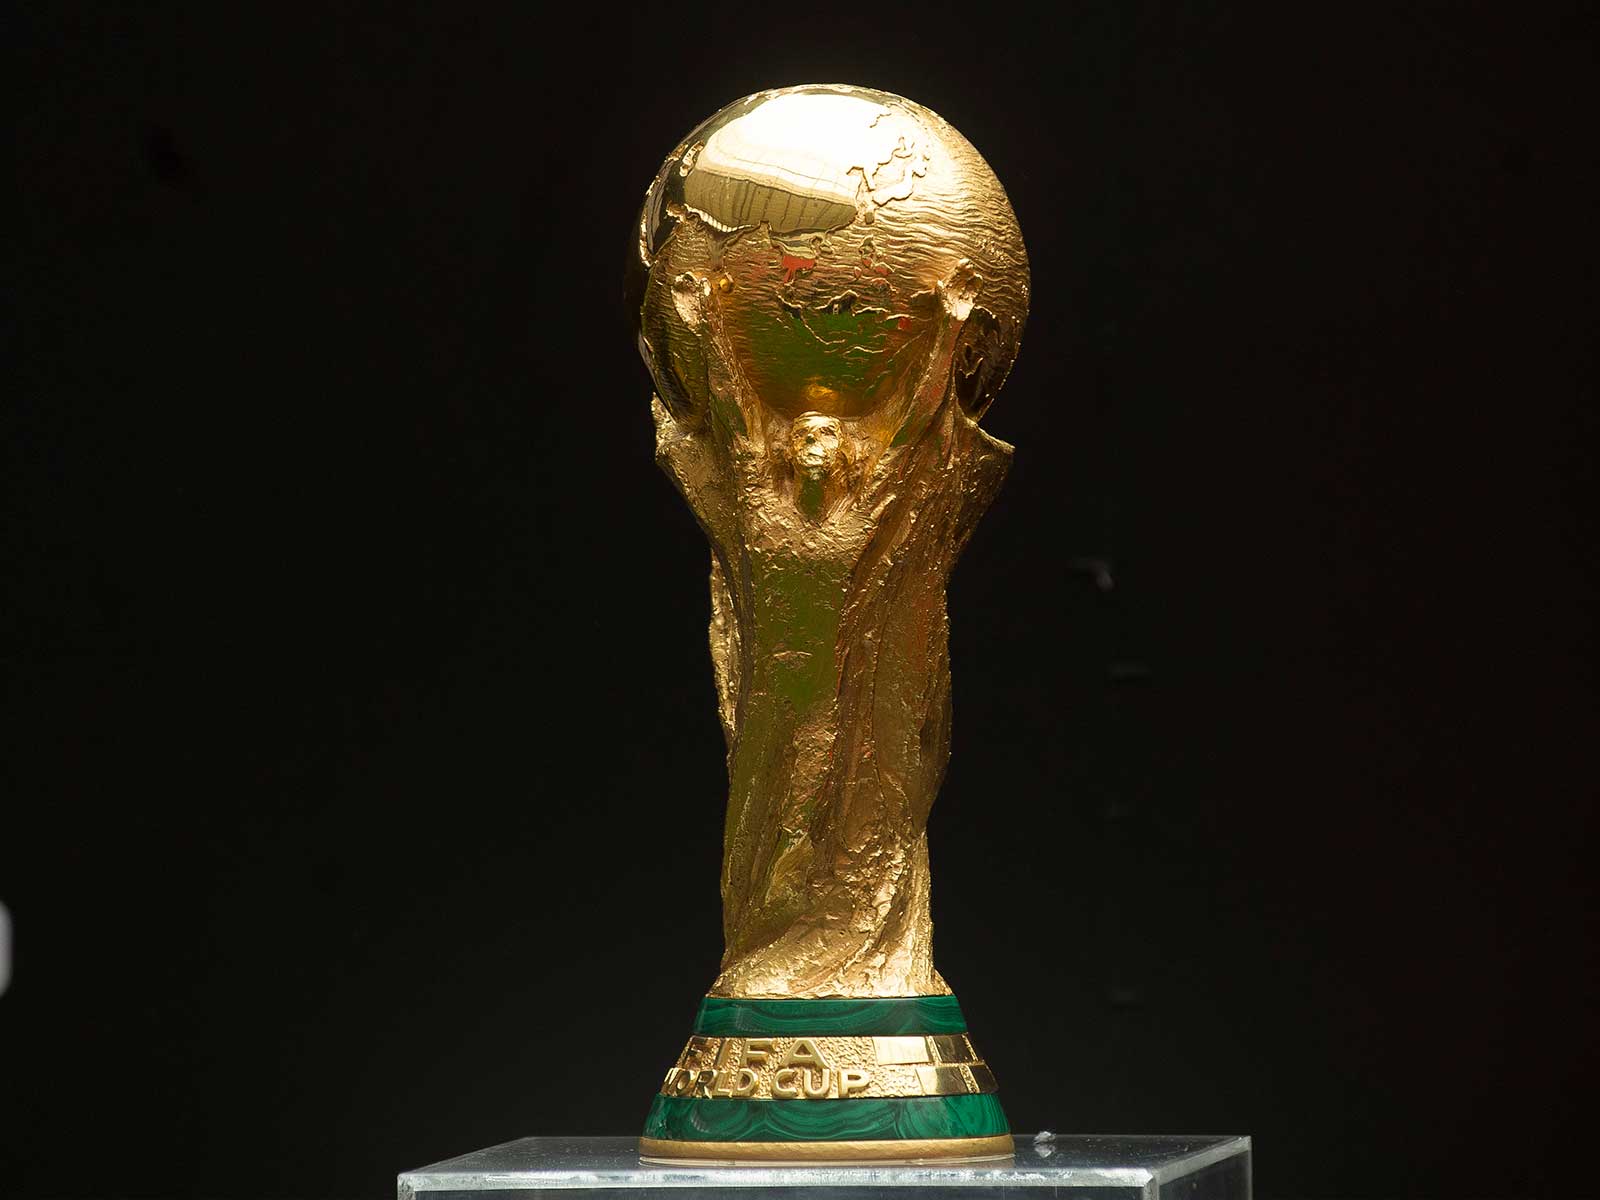 Copa do Mundo do Catar tem ingressos mais caros da história, mostra estudo